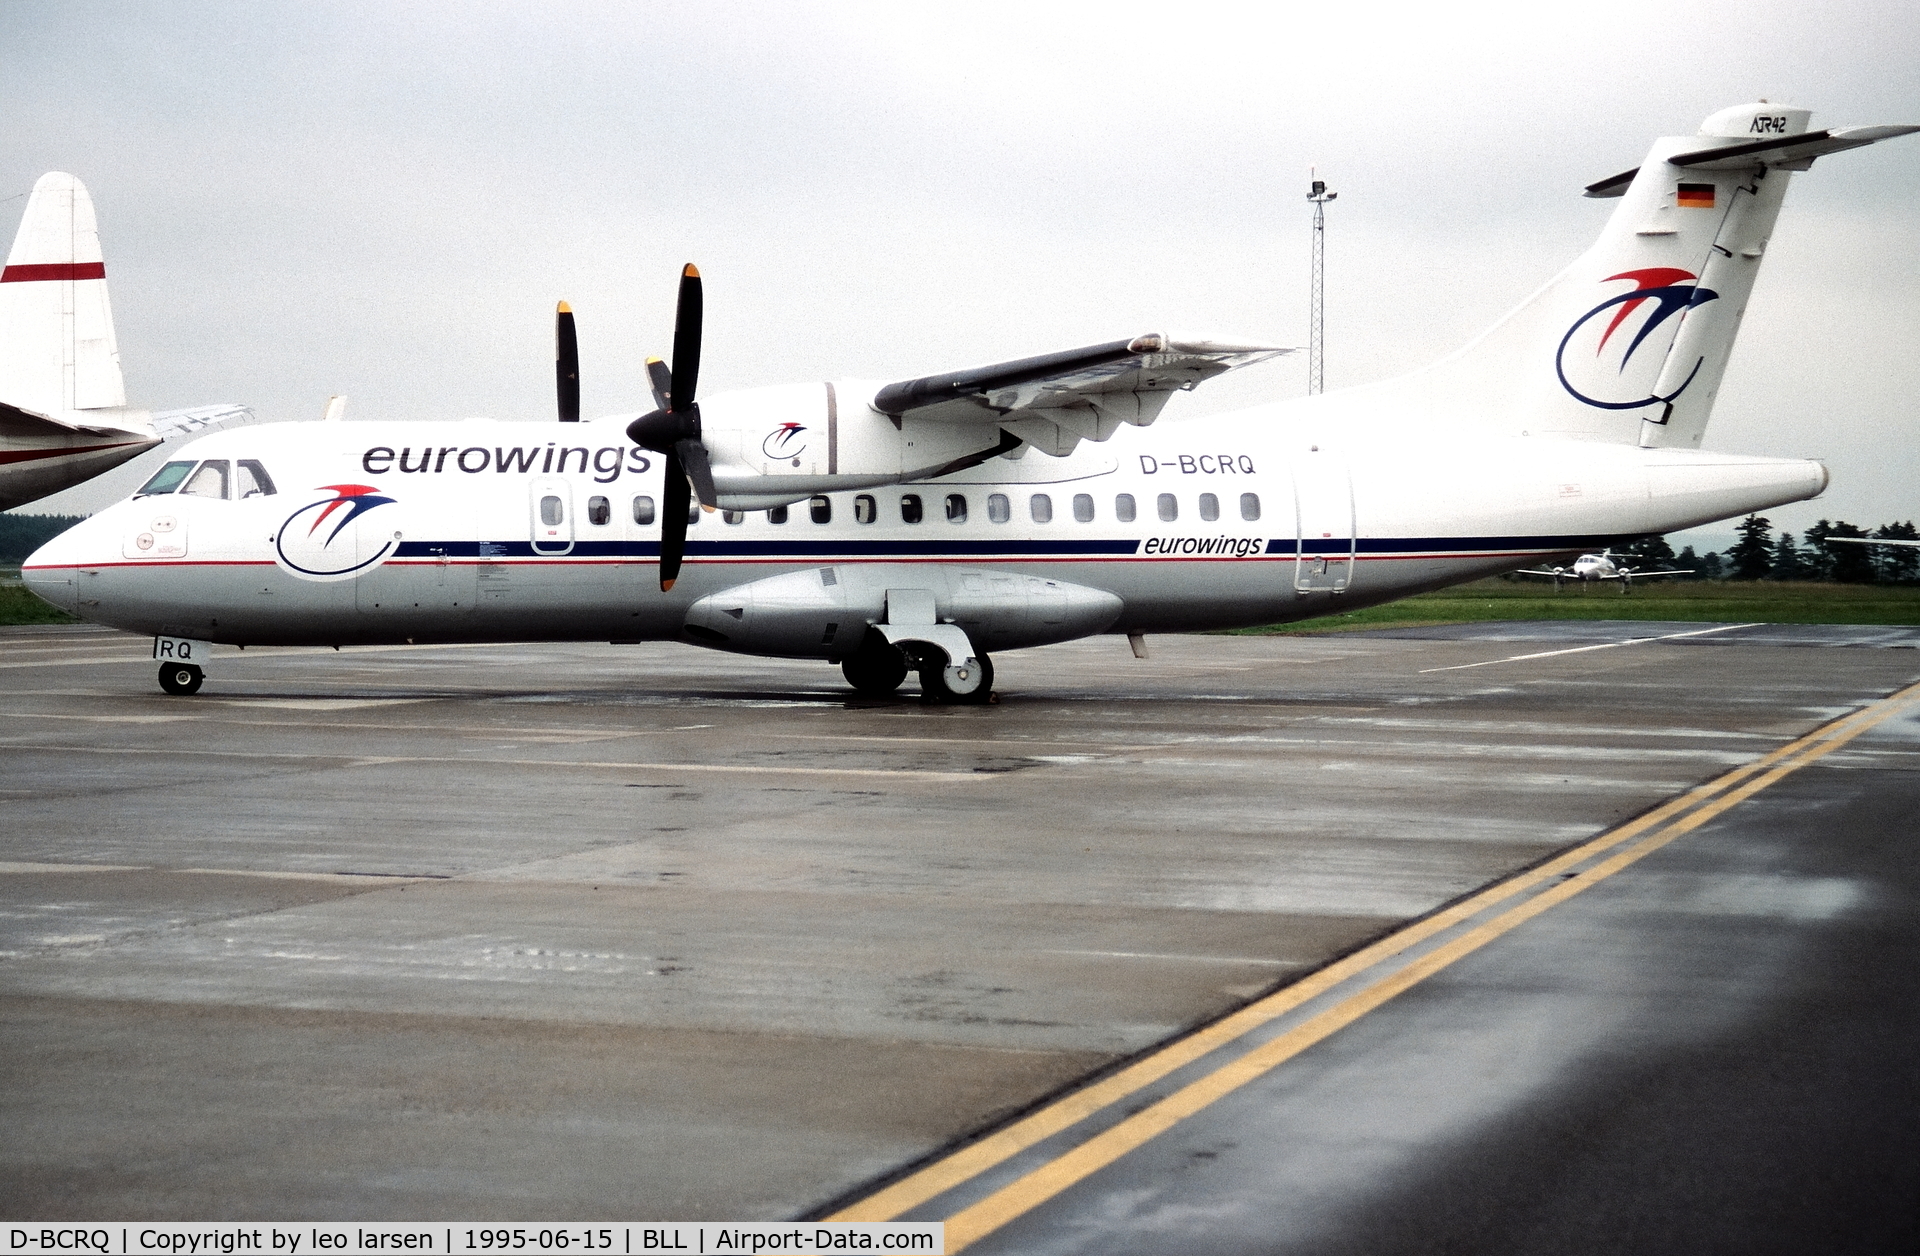 D-BCRQ, 1991 ATR 42-300 C/N 233, Billund 15.6.1995